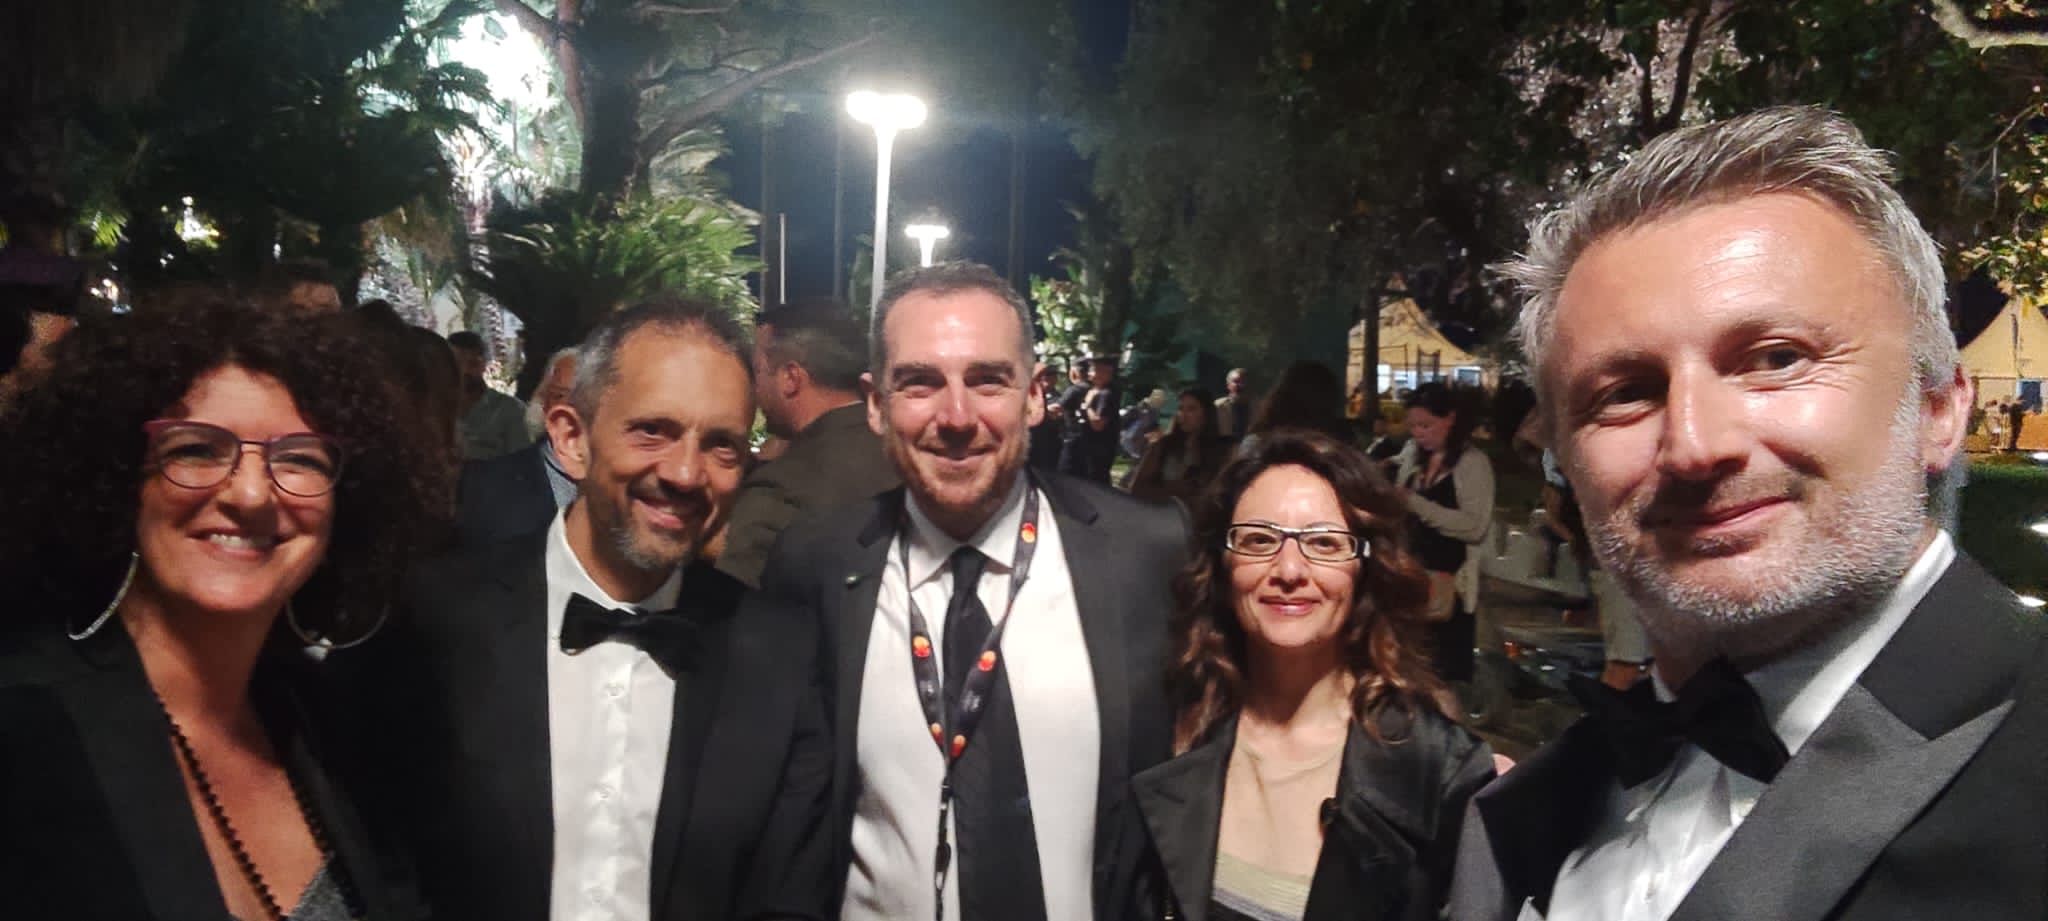 Da sinistra la direttrice di Film commission VdA Alessandra Miletto accanto all’assessore Jean-Pierre Guichardaz, il presidente Simone Gandolfo, Monica Amato e il location manager Giorgio Vigna.